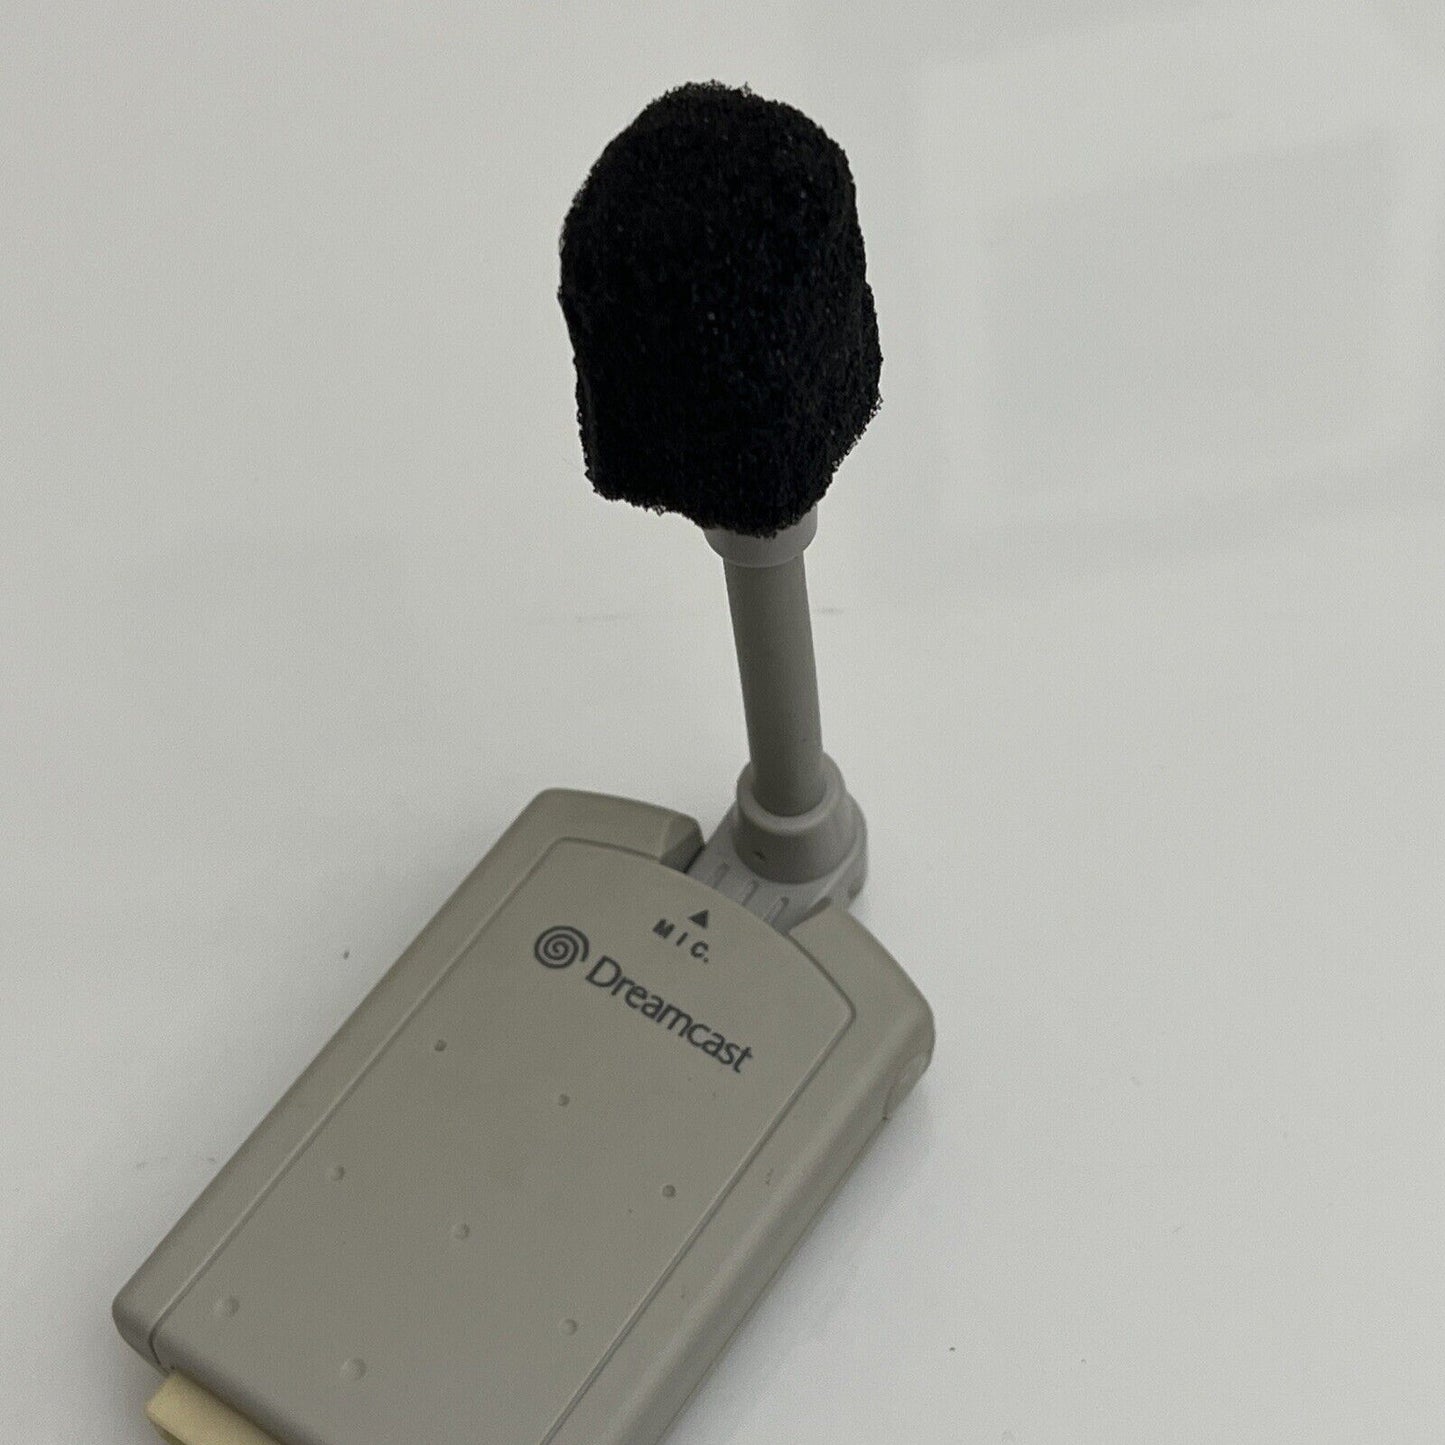 Official Sega Dreamcast Microphone HKT-7200